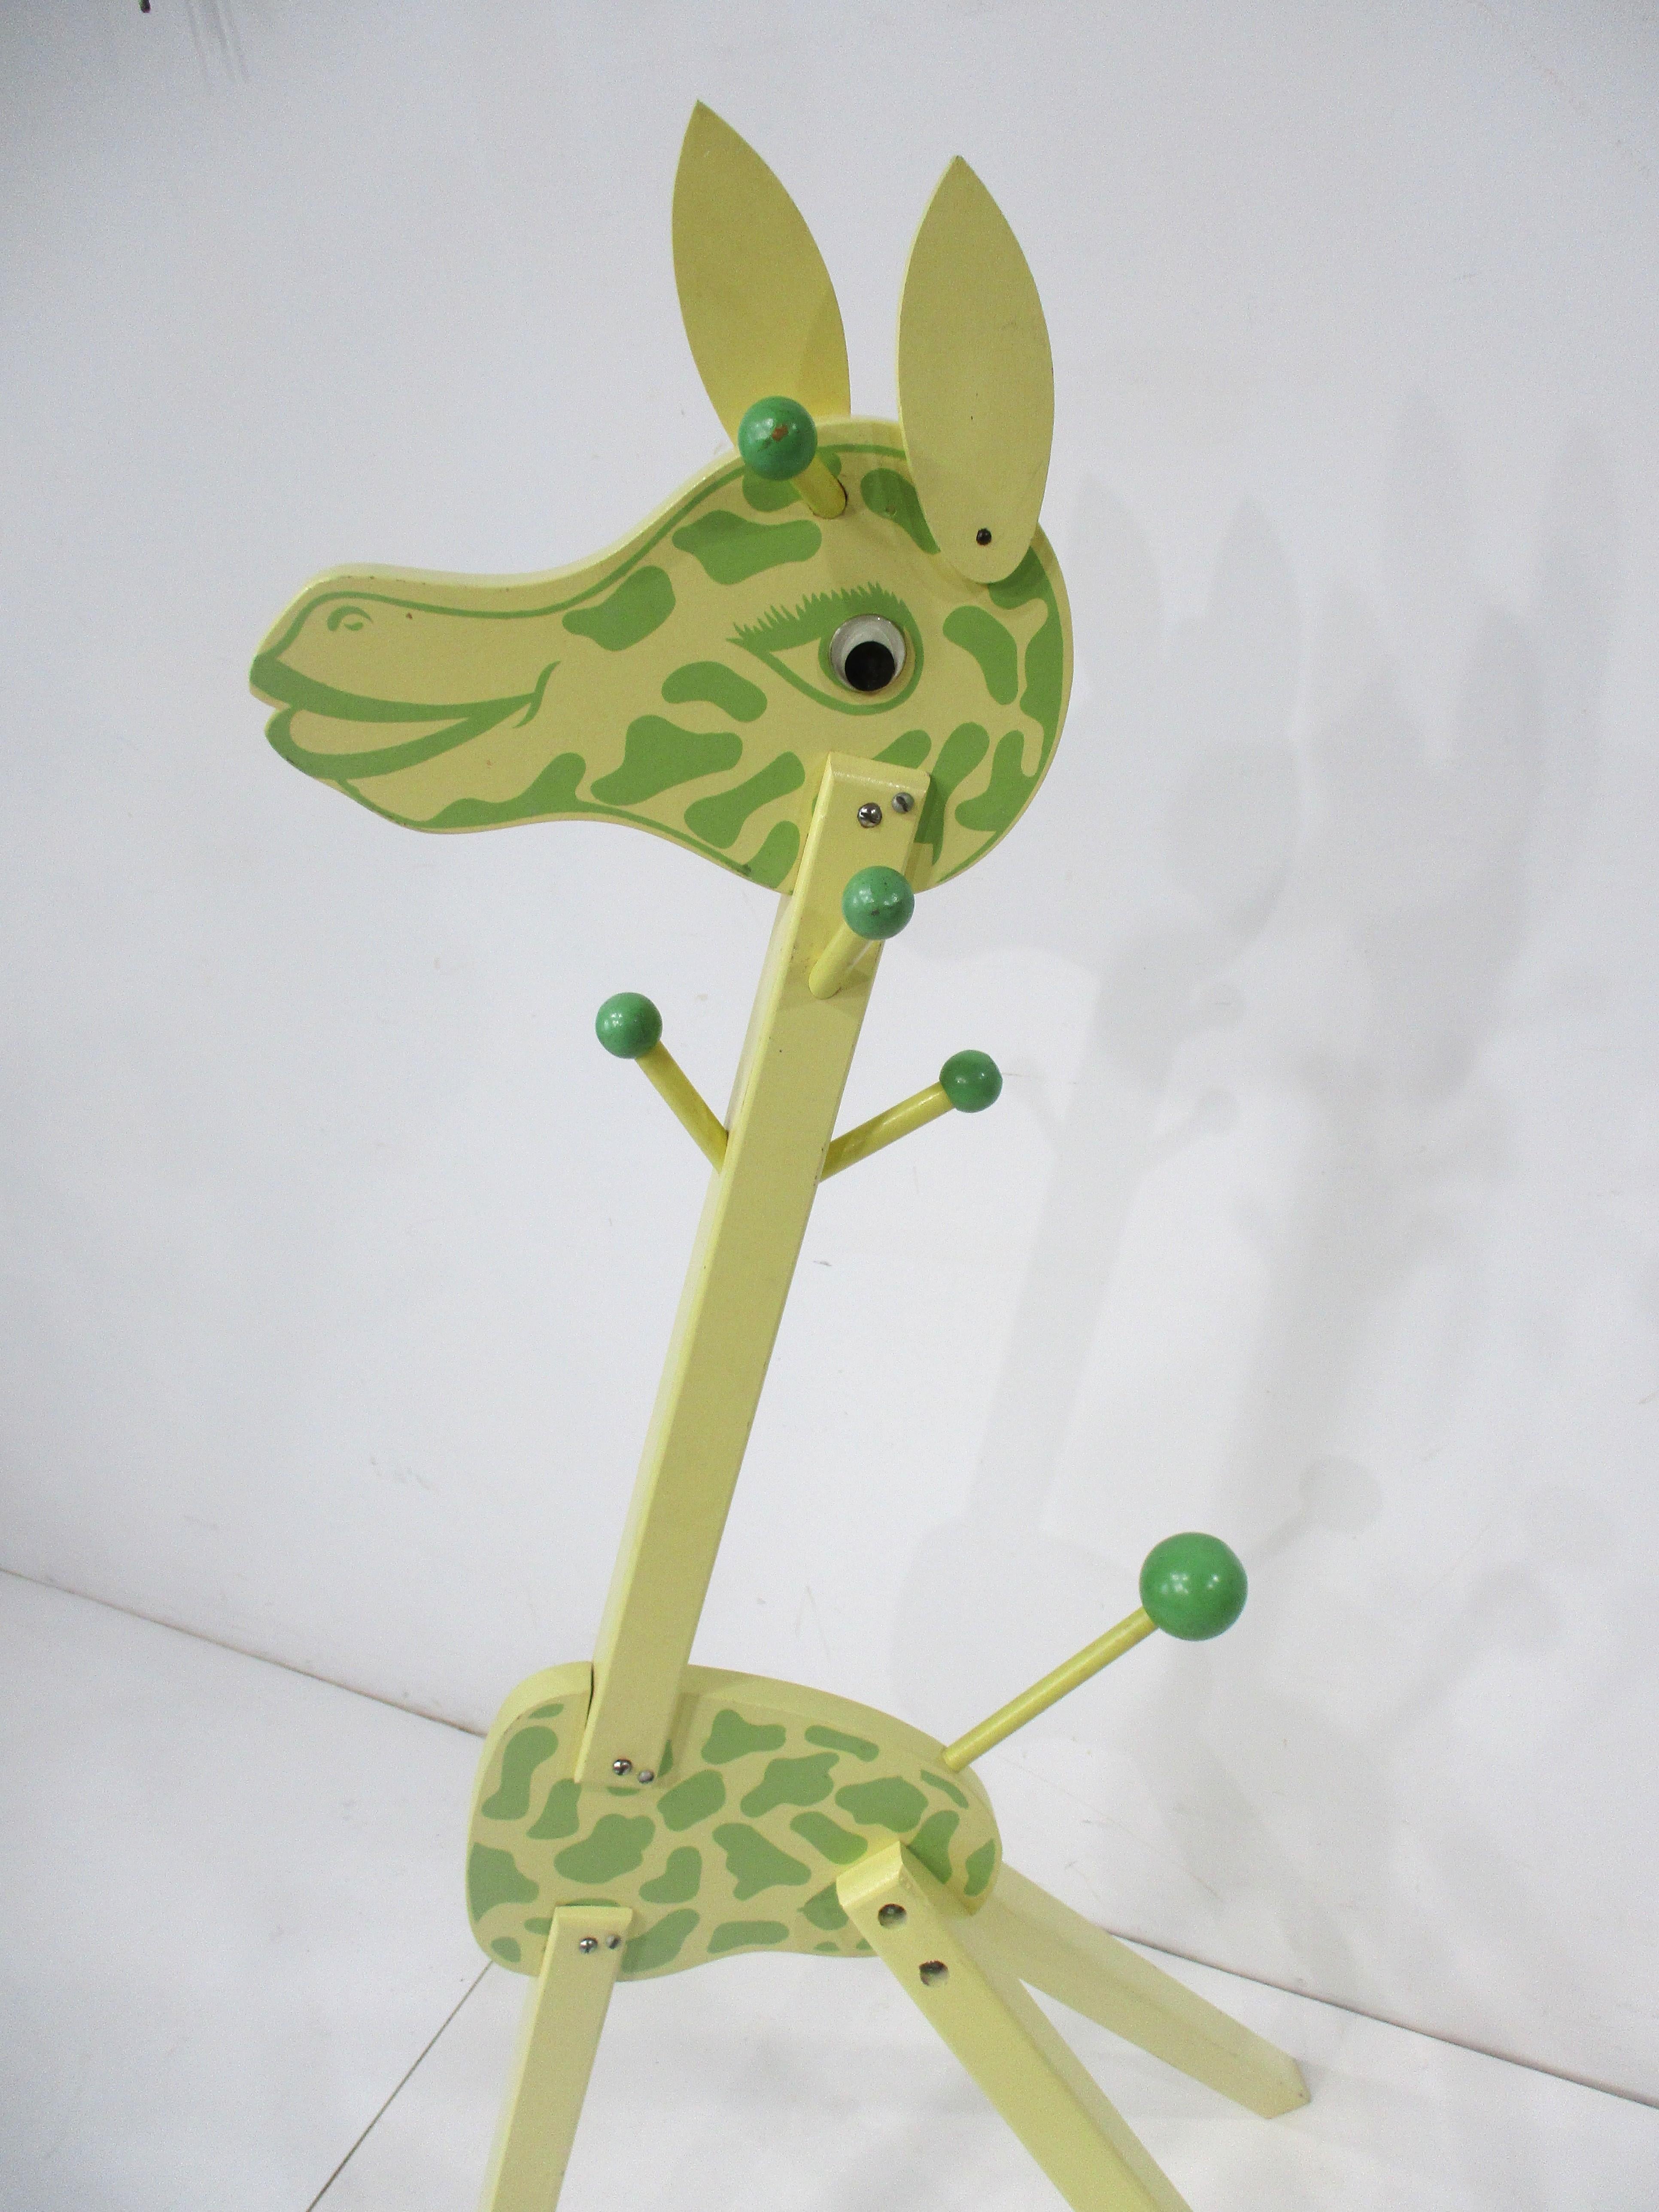 Arbre à vêtements pour enfants girafe en bois très mignonne nommée Irmi dans un jaune très doux détaillé avec des taches peintes en vert clair sur le visage et le corps. Le corps a des poteaux de suspension avec des boules de couleur contrastante et